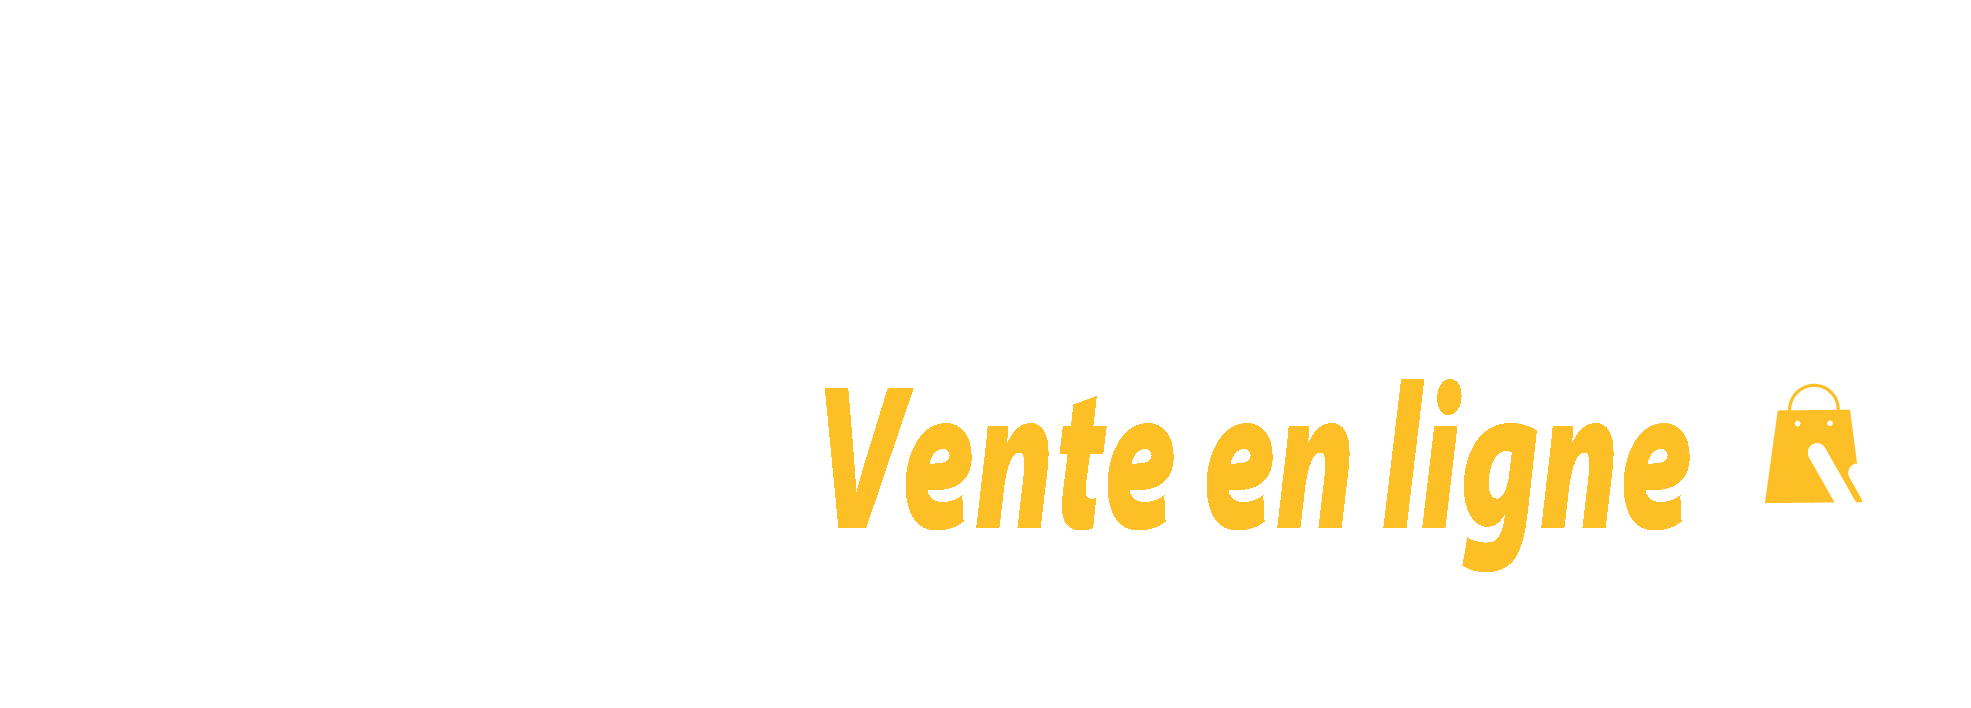 Vitamin algerie